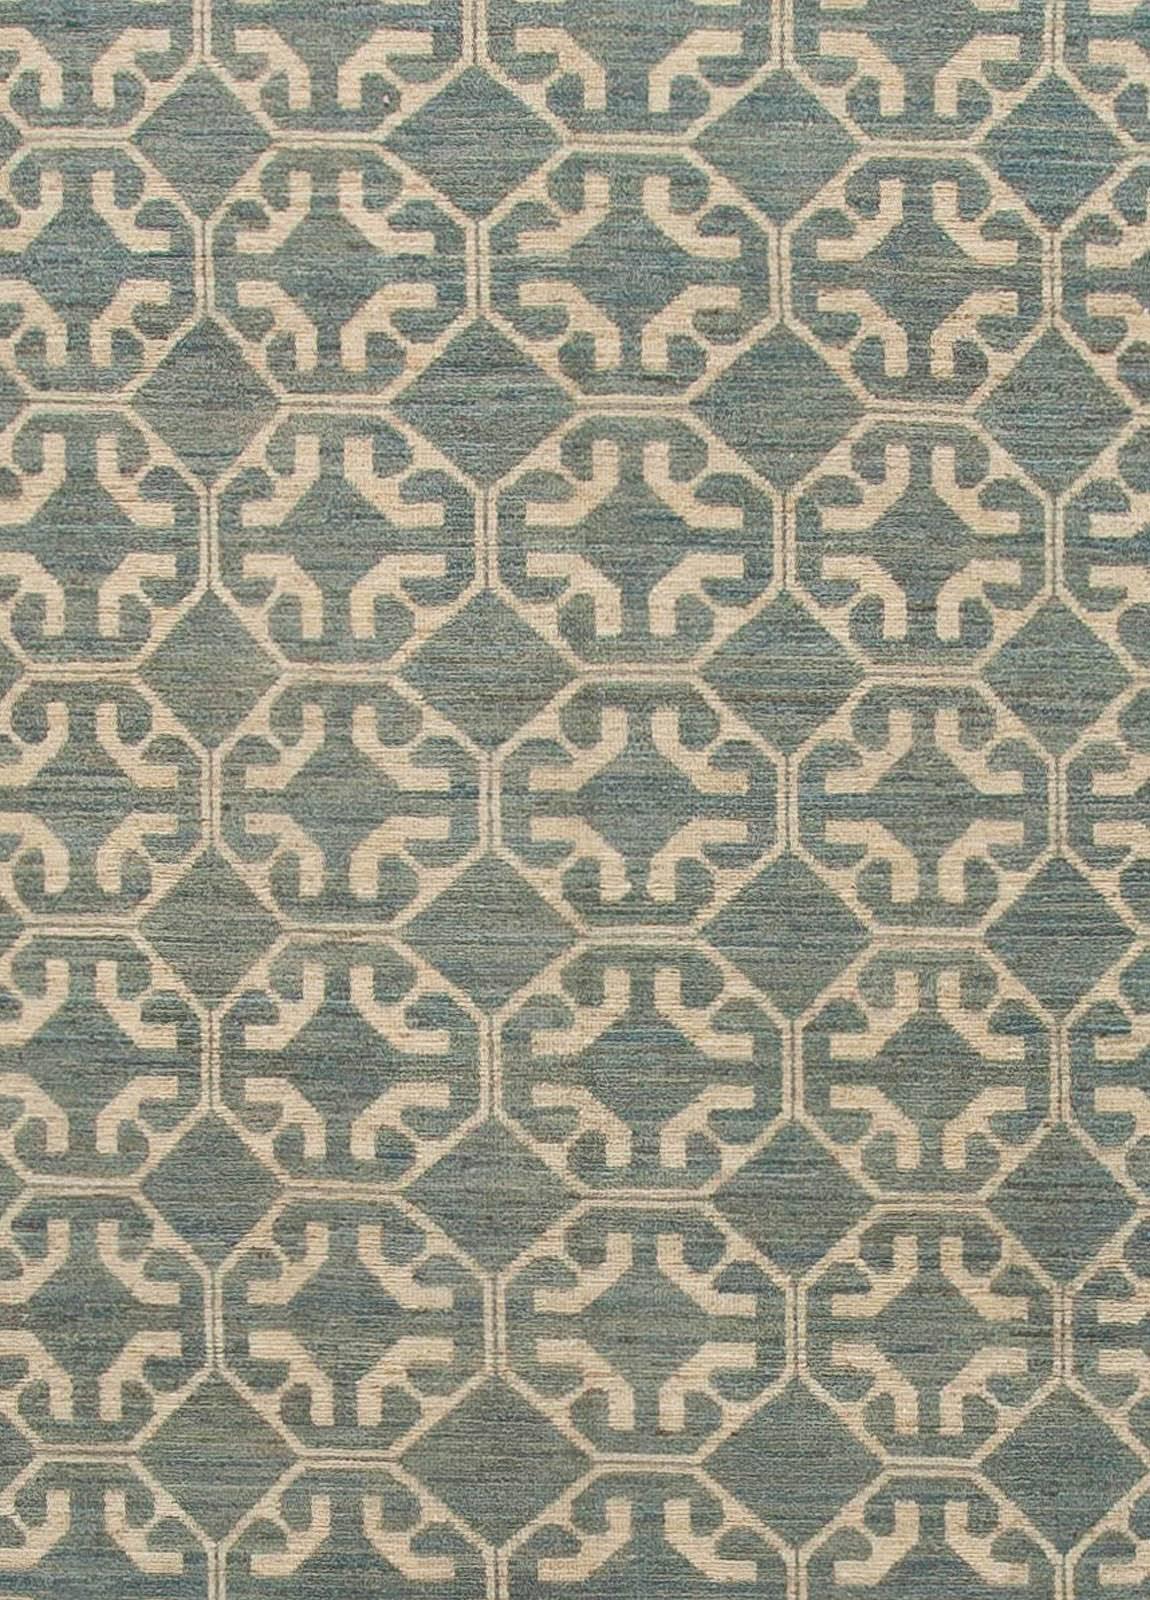 A modern Khotan carpet.